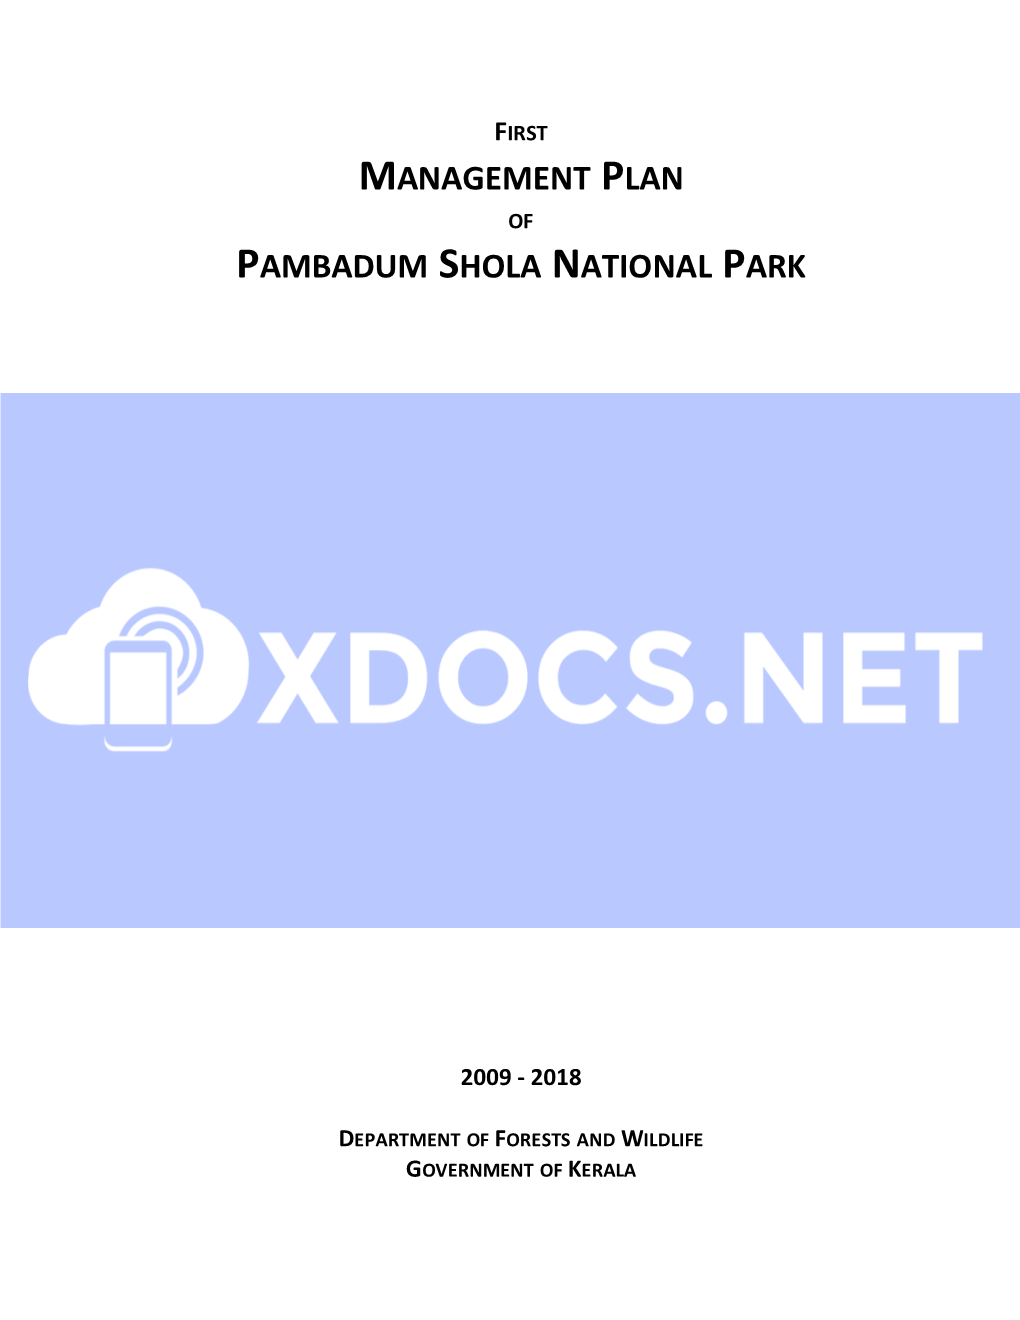 Management Plan Pambadum Shola National Park